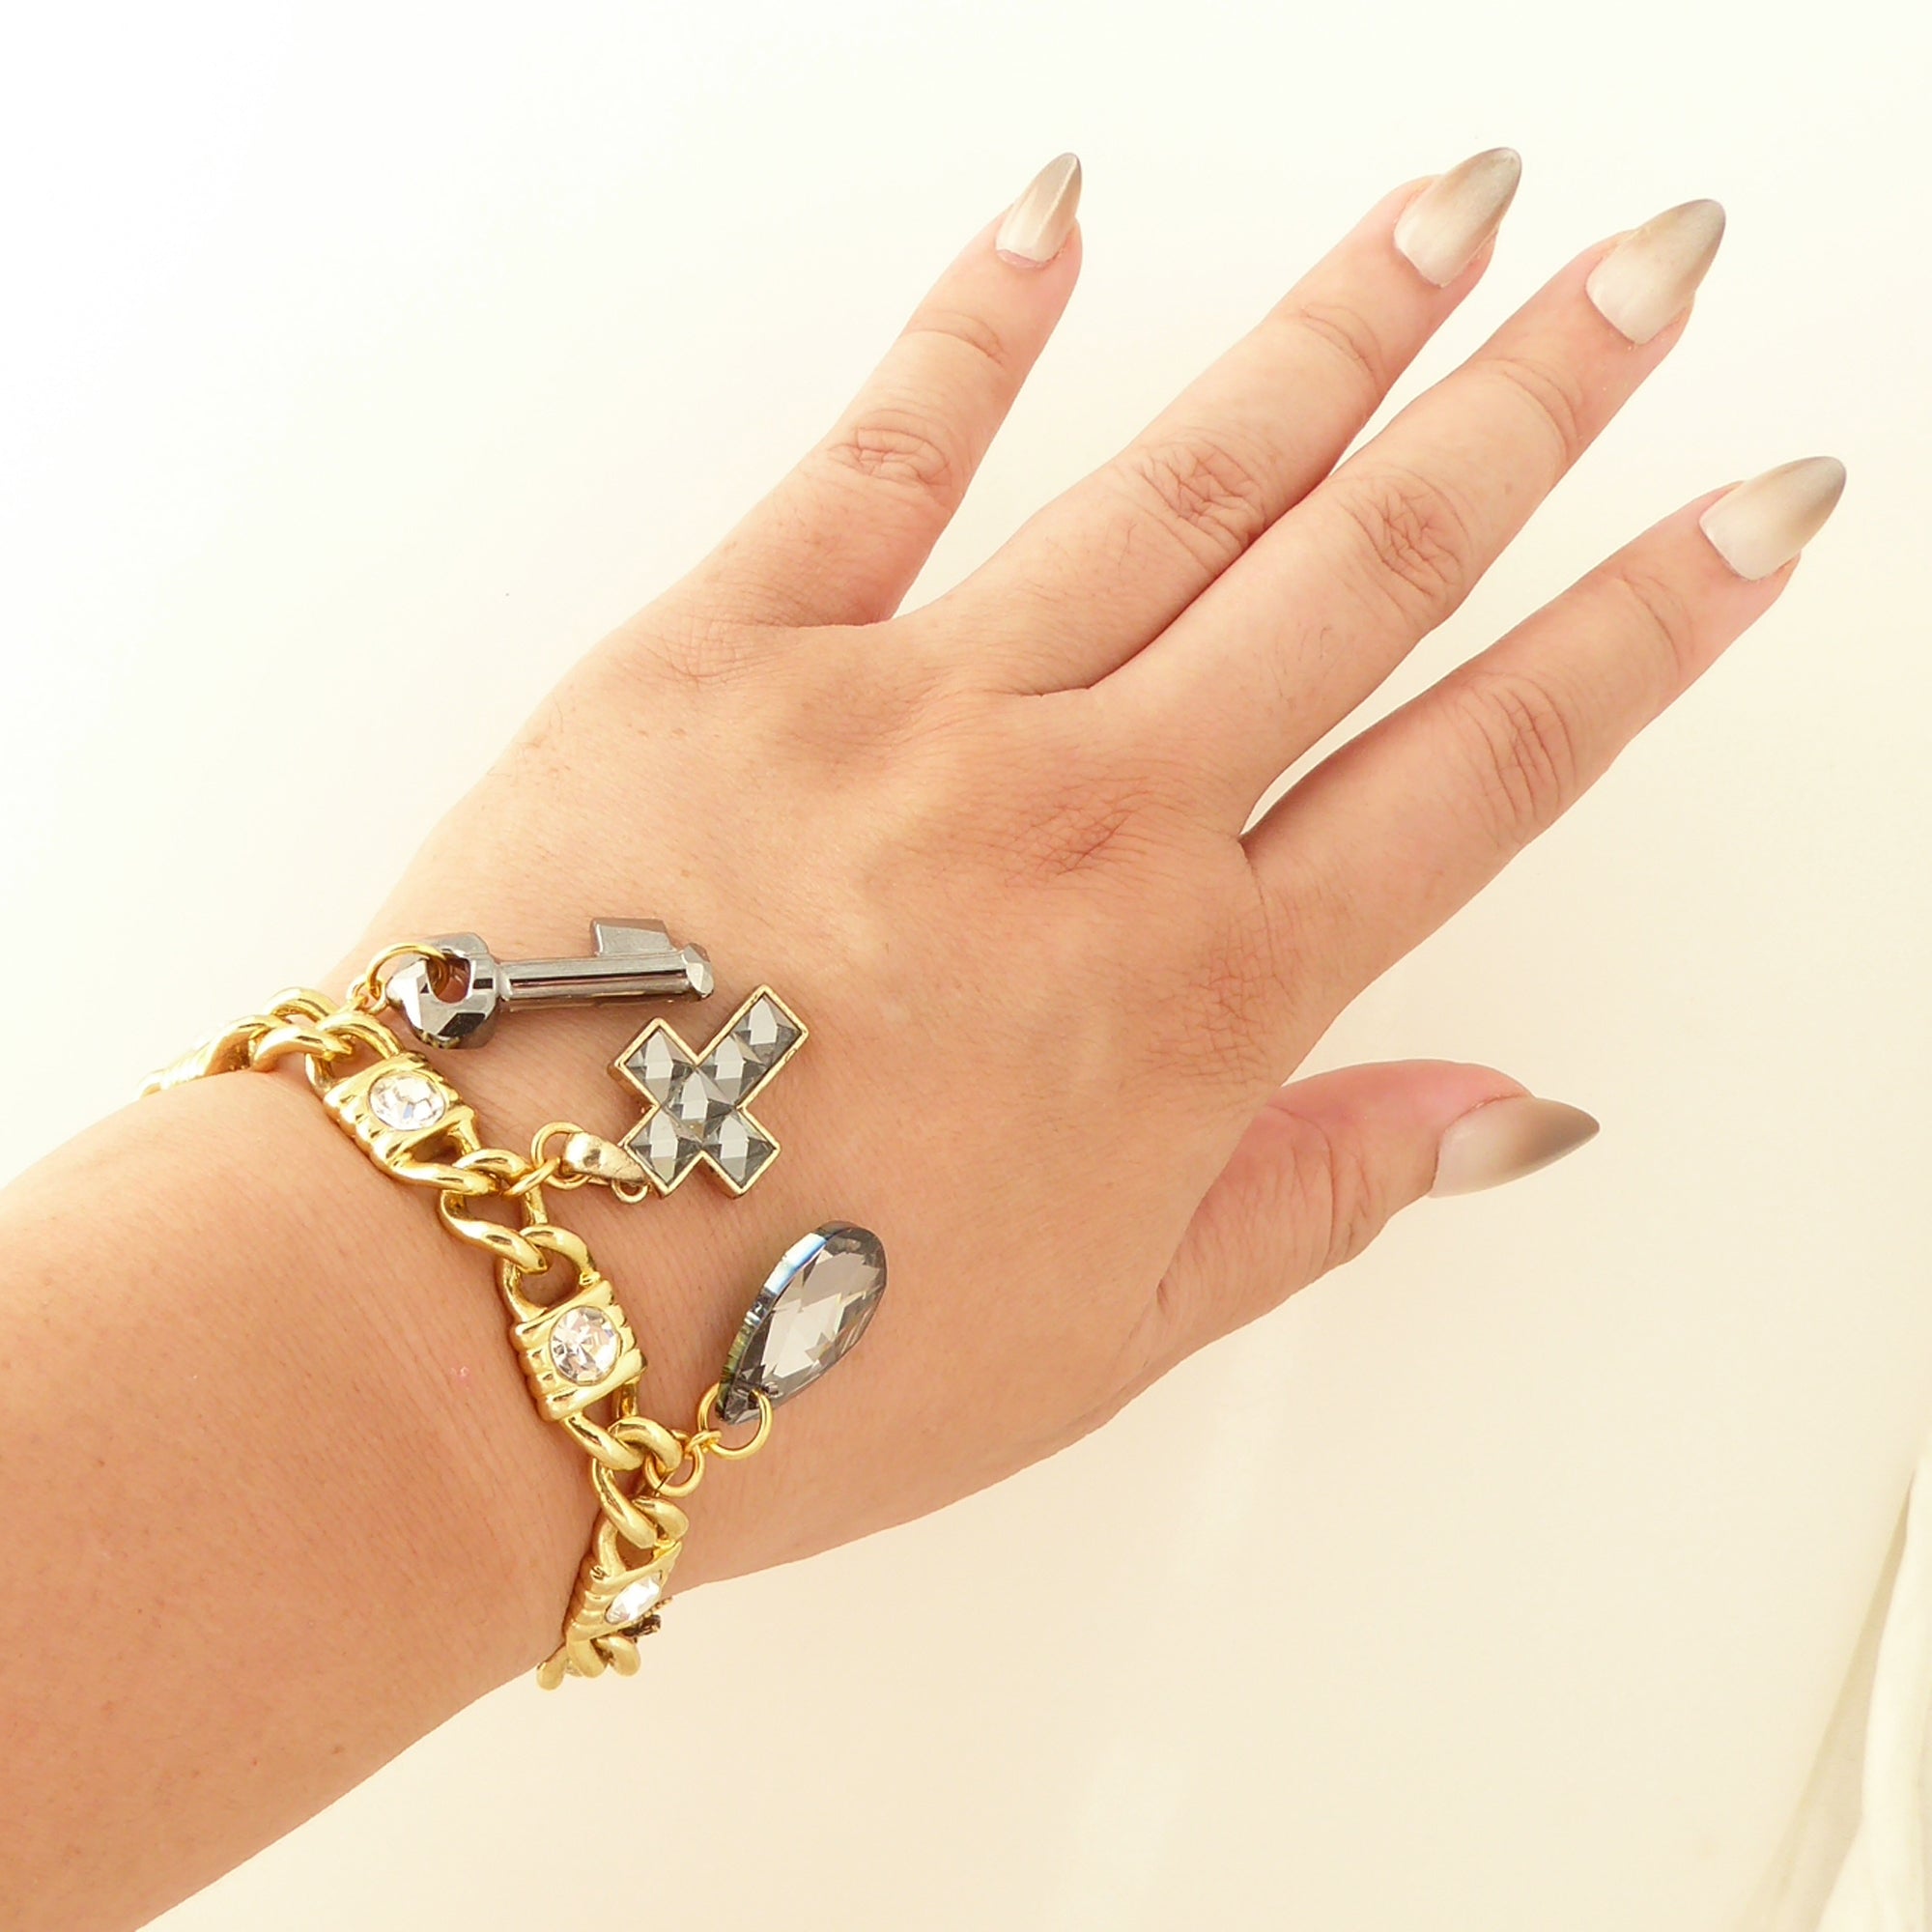 Gray crystal charm bracelet by Jenny Dayco 4